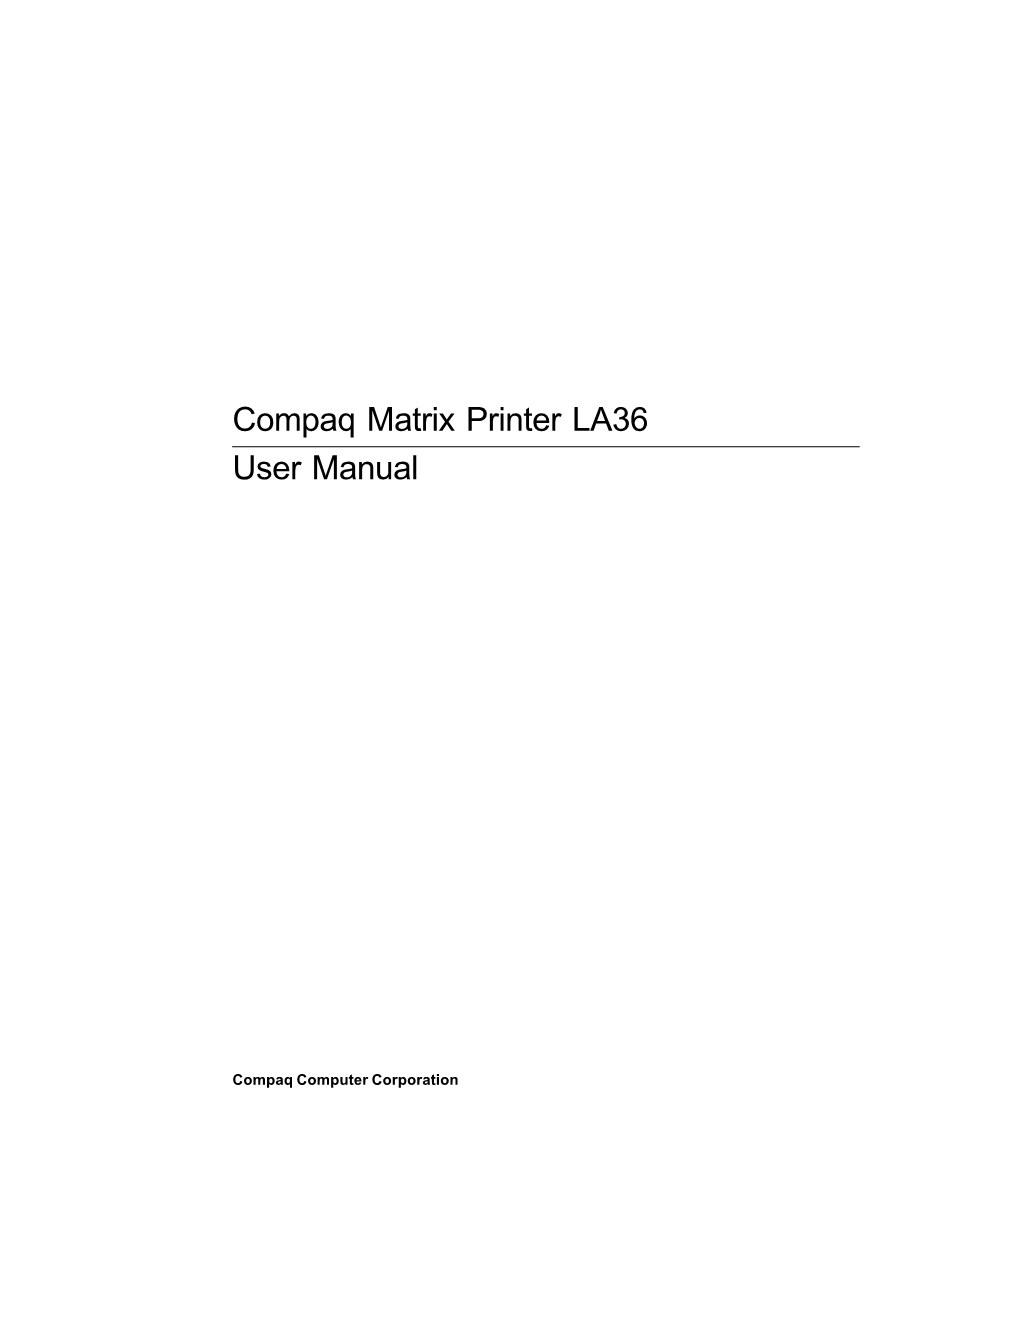 Compaq Matrix Printer LA36 User Manual